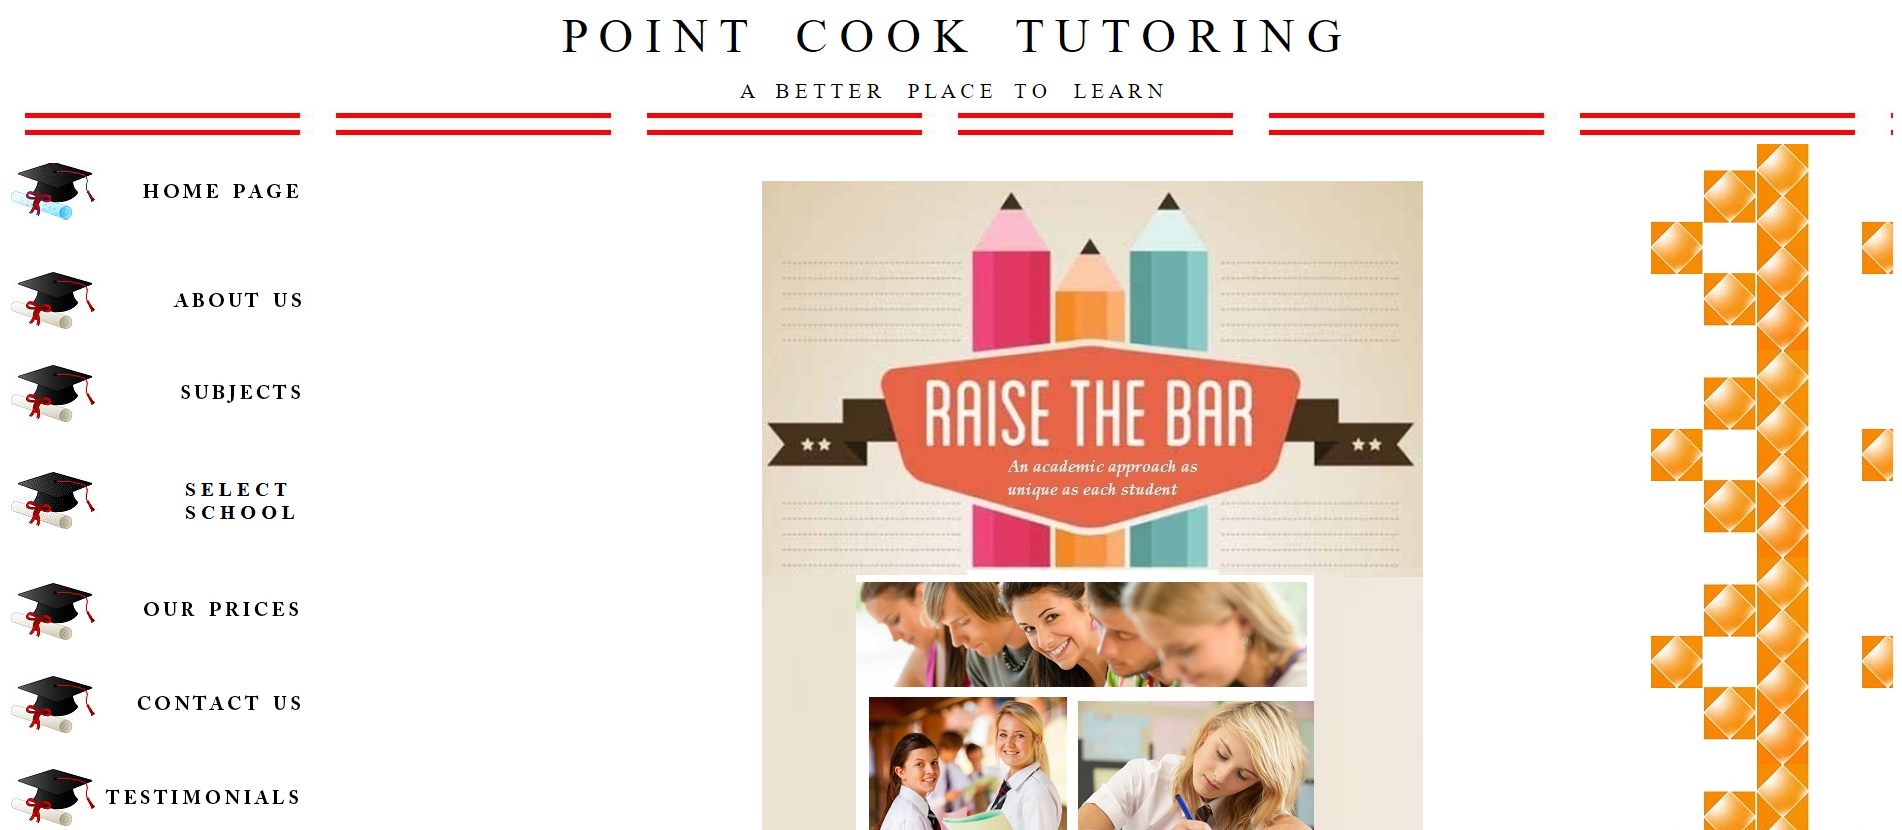 point cook tutoring vce tutors melbourne